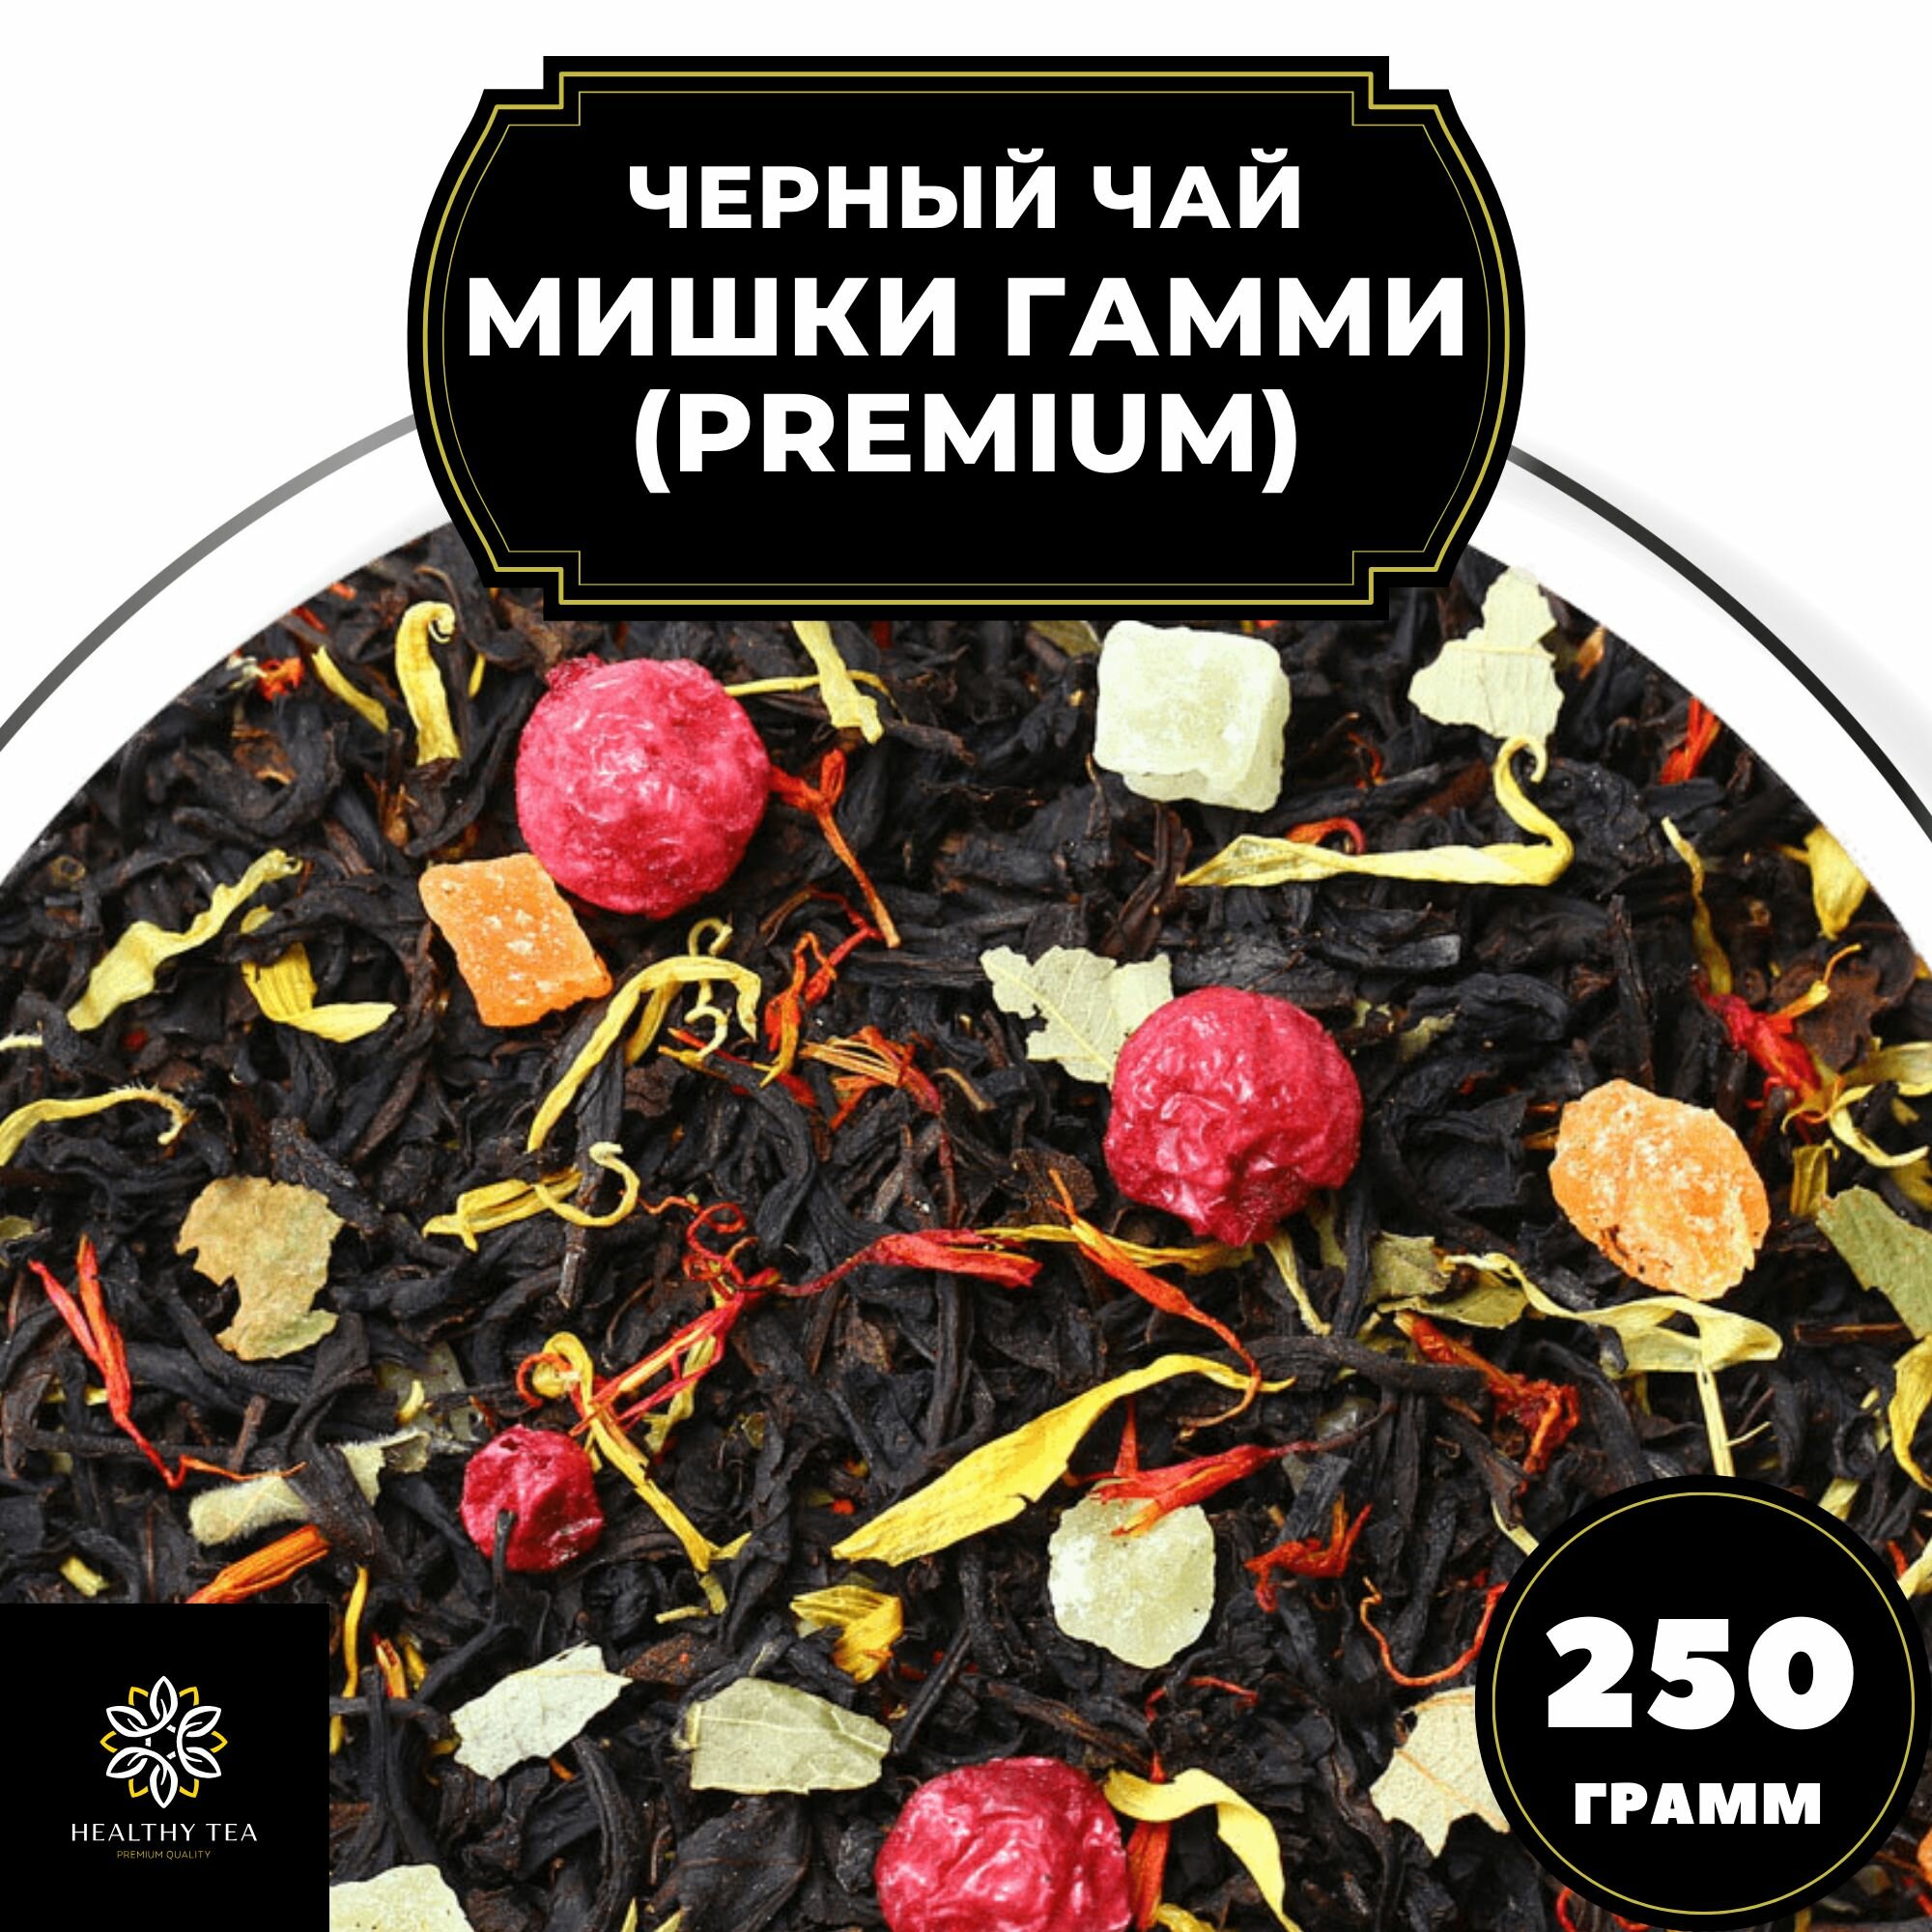 Цейлонский Черный чай с клубникой, ананасом и красной смородиной "Мишки Гамми" (Premium) Полезный чай / HEALTHY TEA, 250 гр